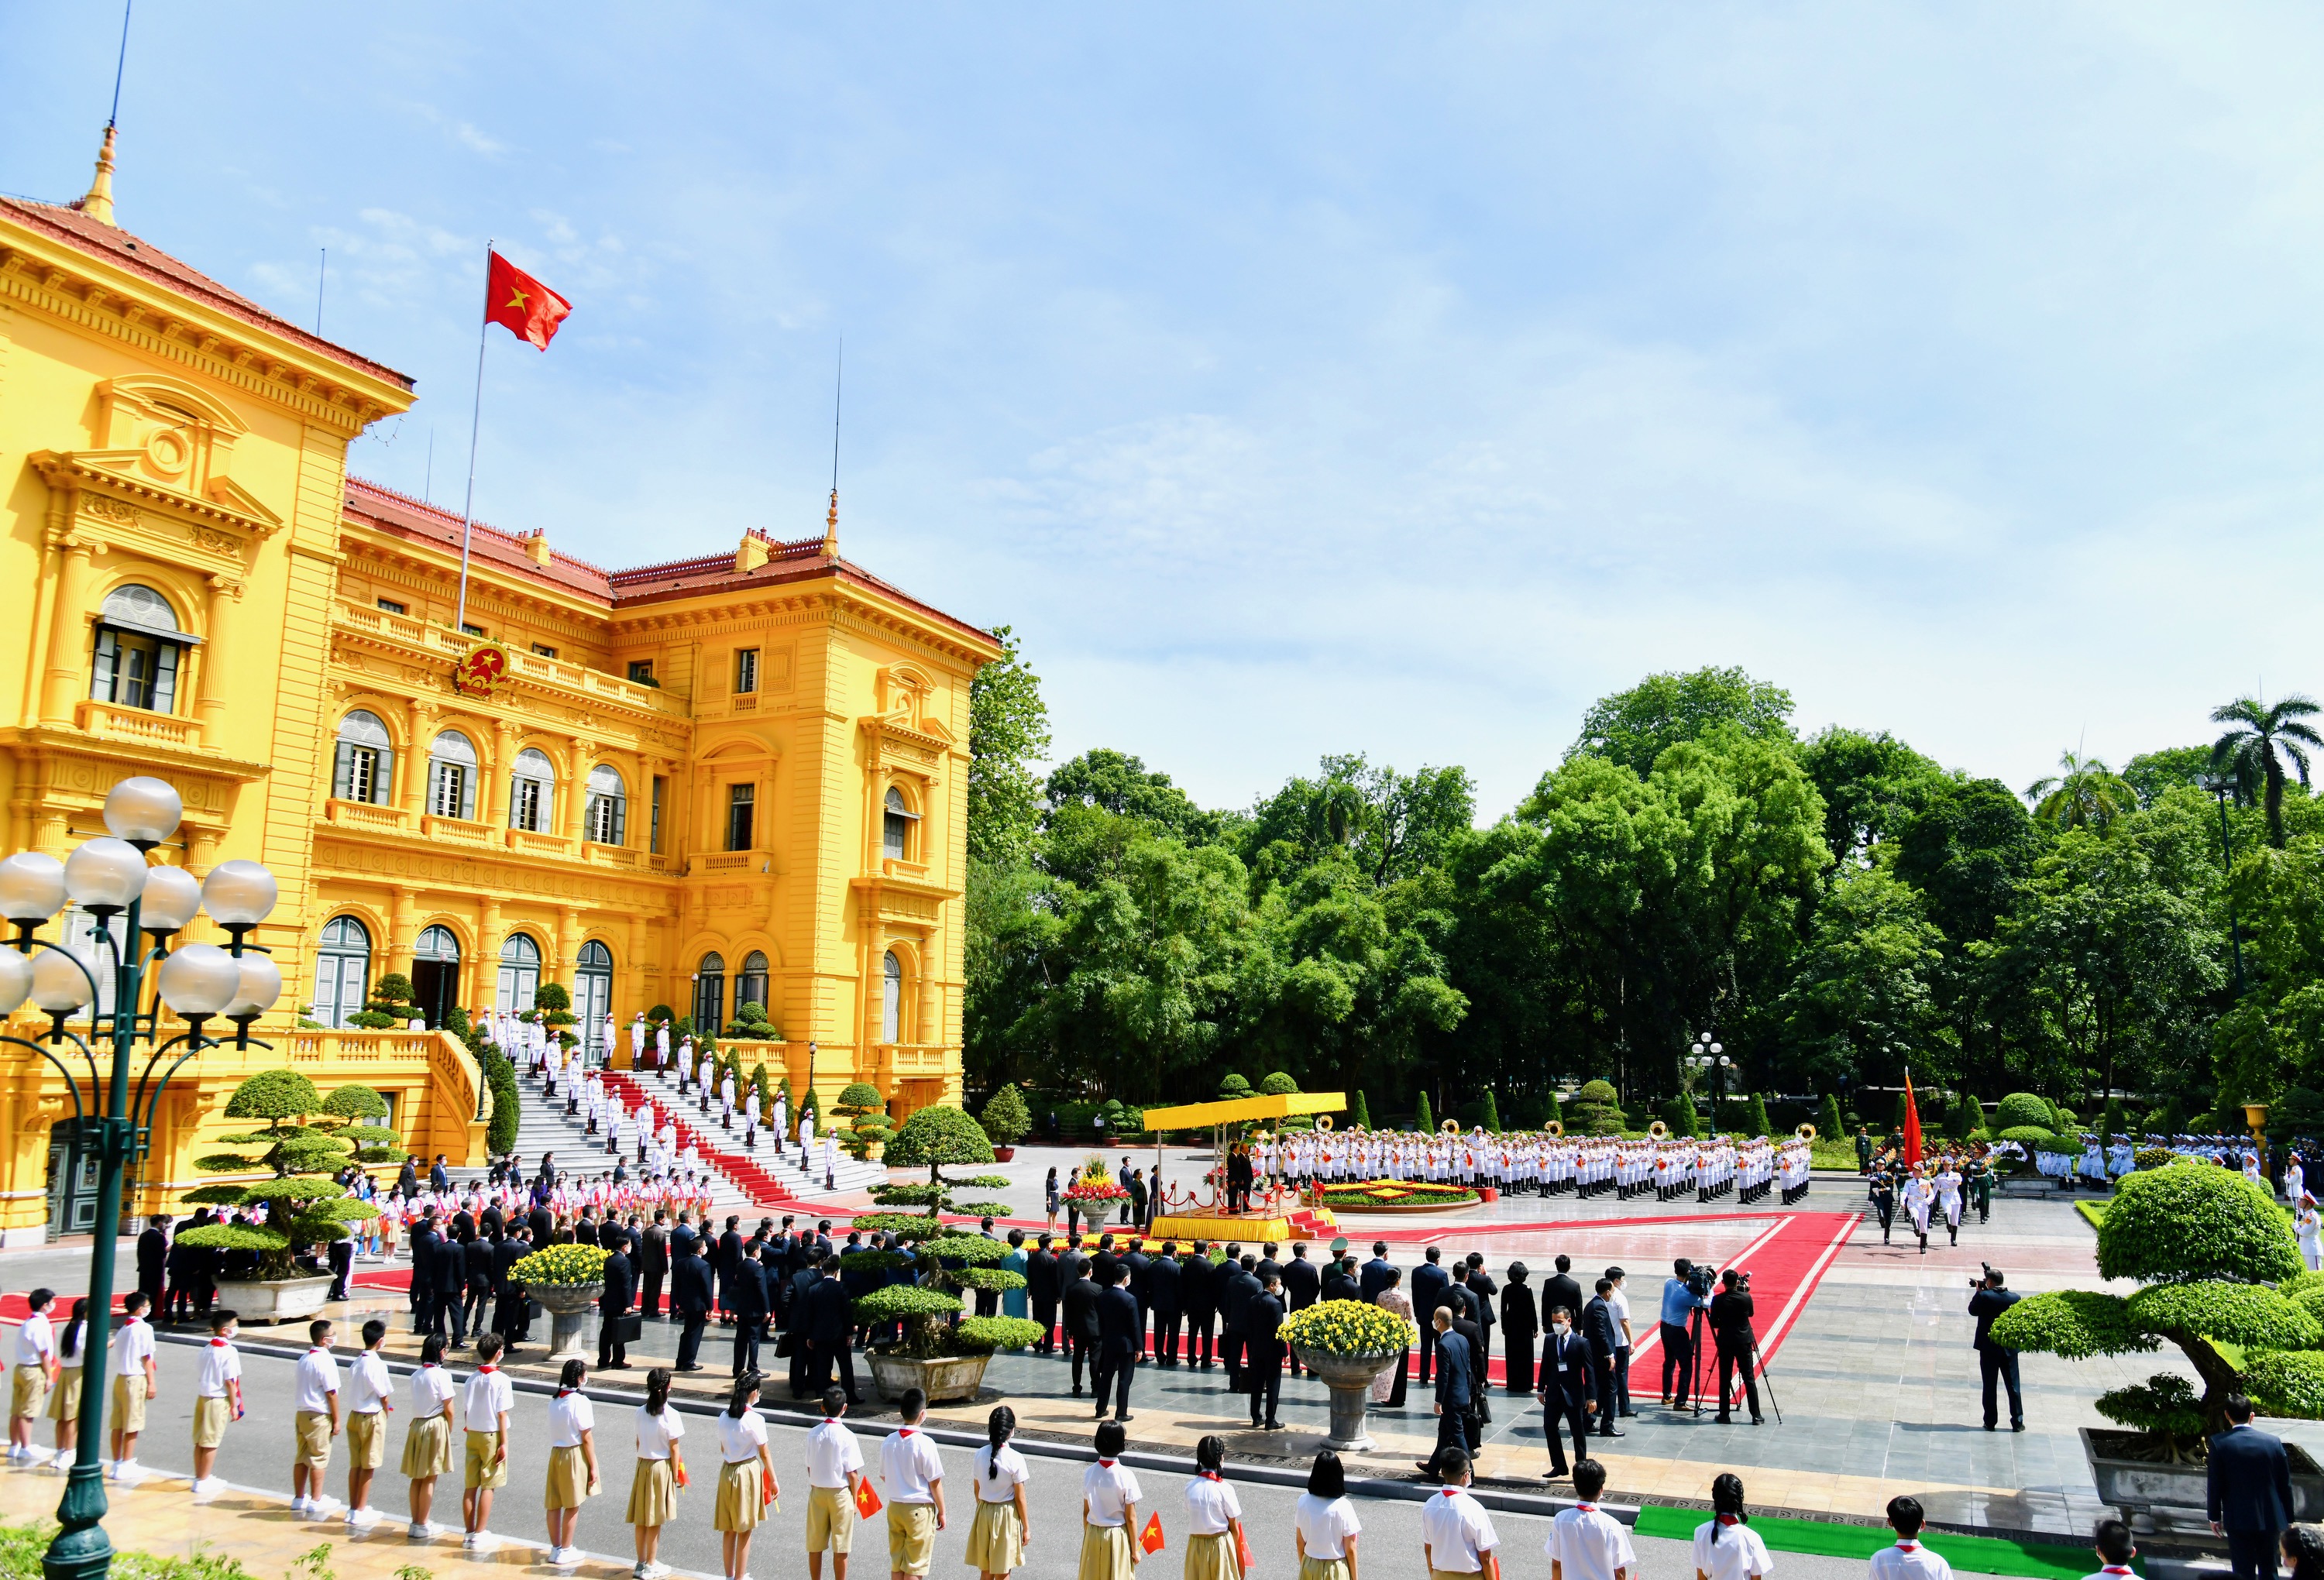 Chủ tịch nước Nguyễn Xuân Phúc chủ trì Lễ đón Tổng Bí thư, Chủ tịch nước Lào